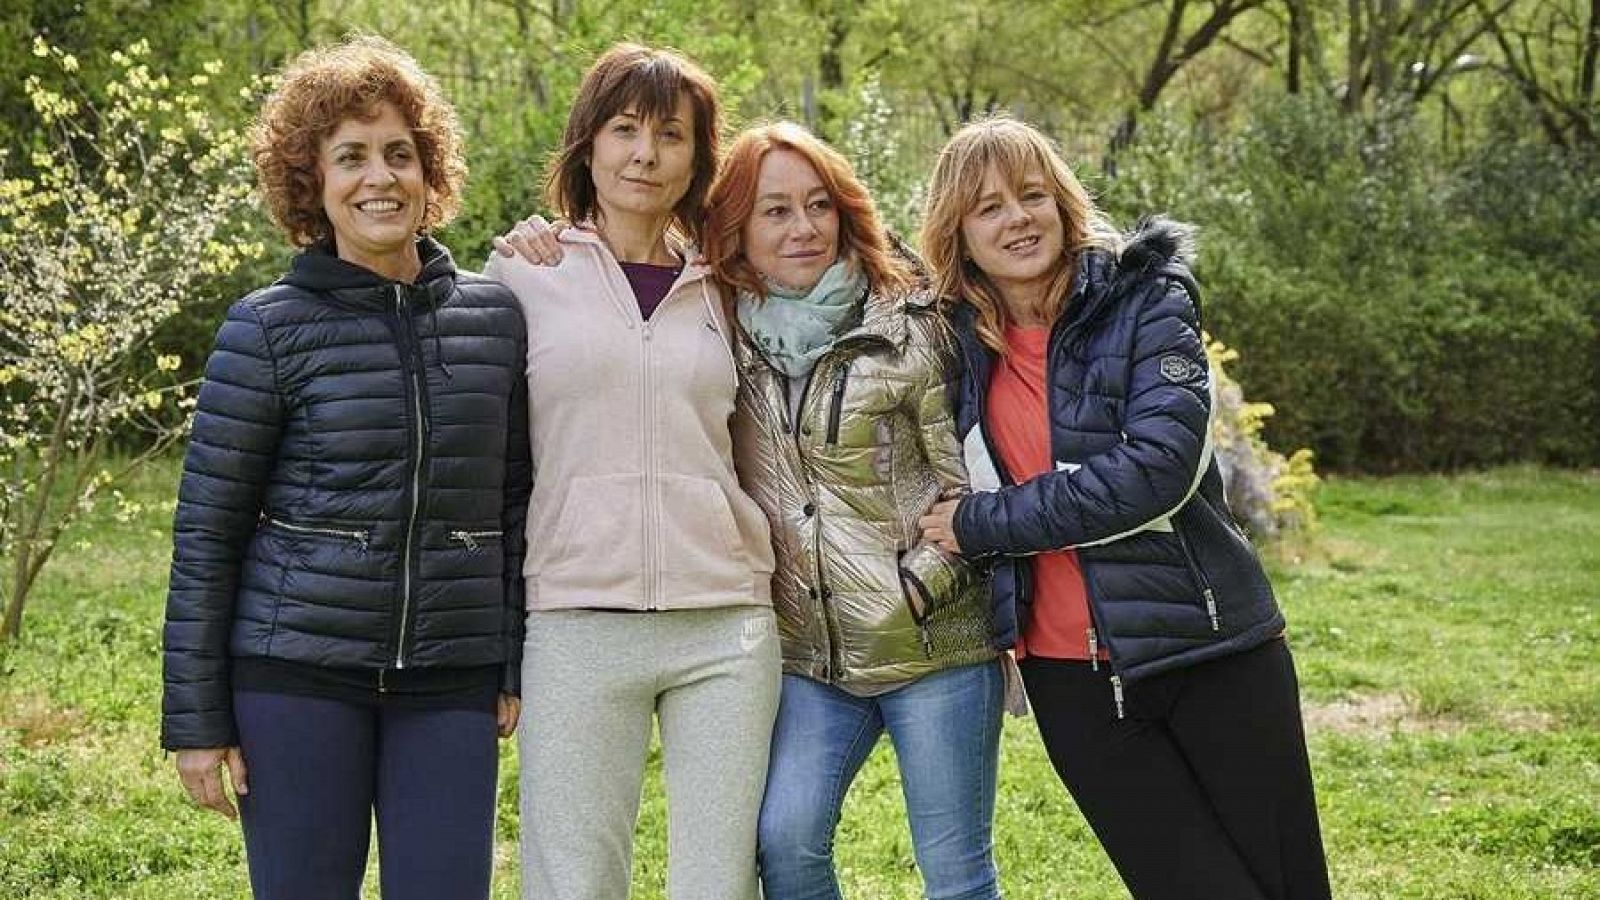 La brecha de género persiste en el cine español